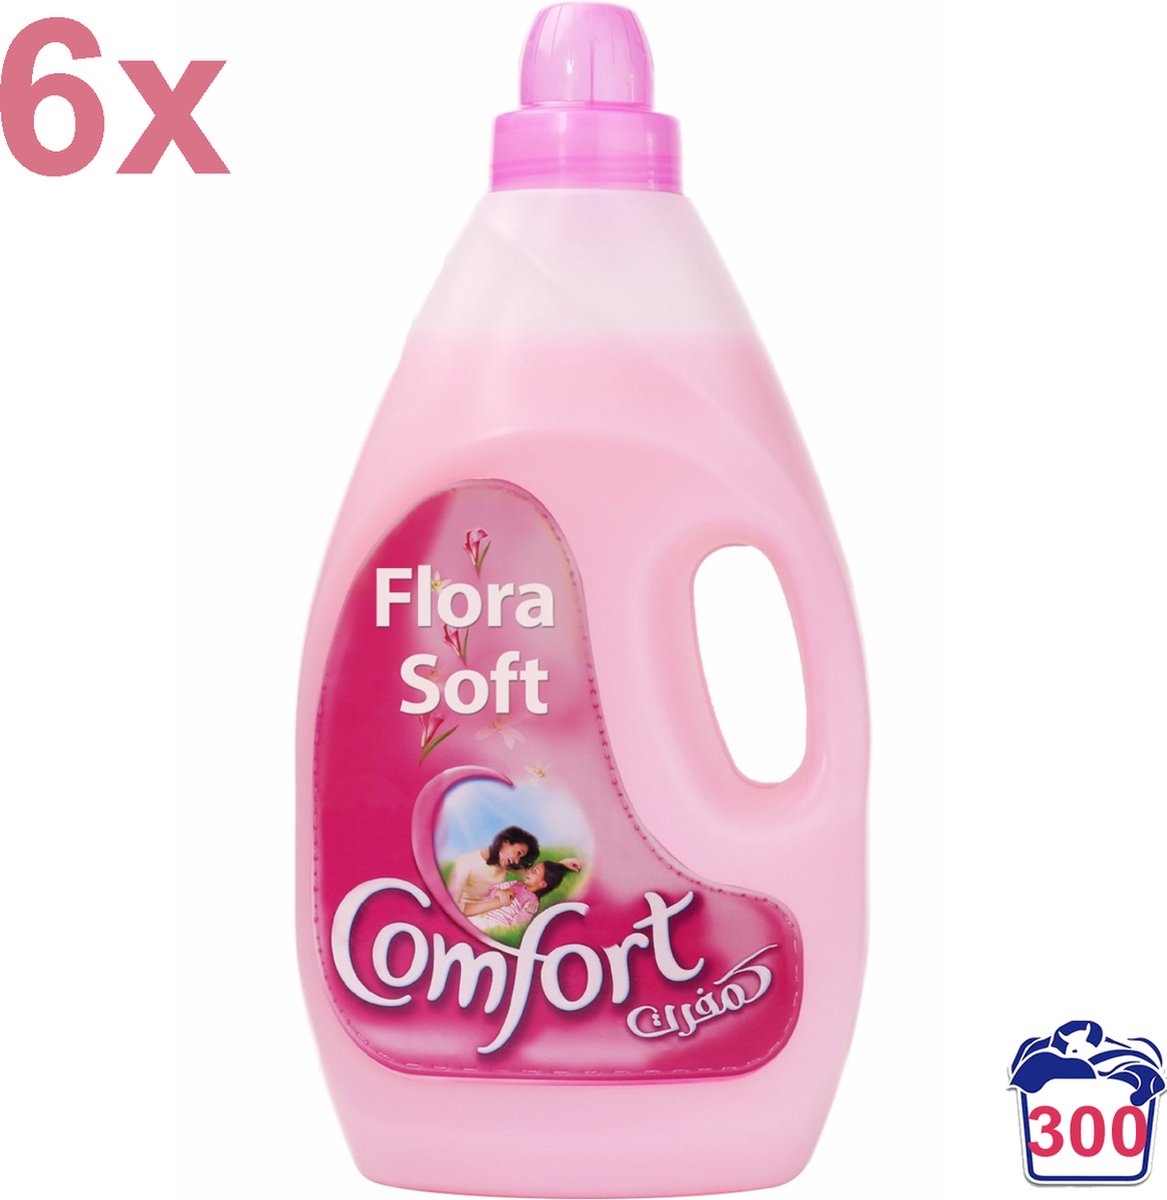 Comfort - Flora Soft - Wasverzachter - 18L - 300 Wasbeurten - Voordeelverpakking